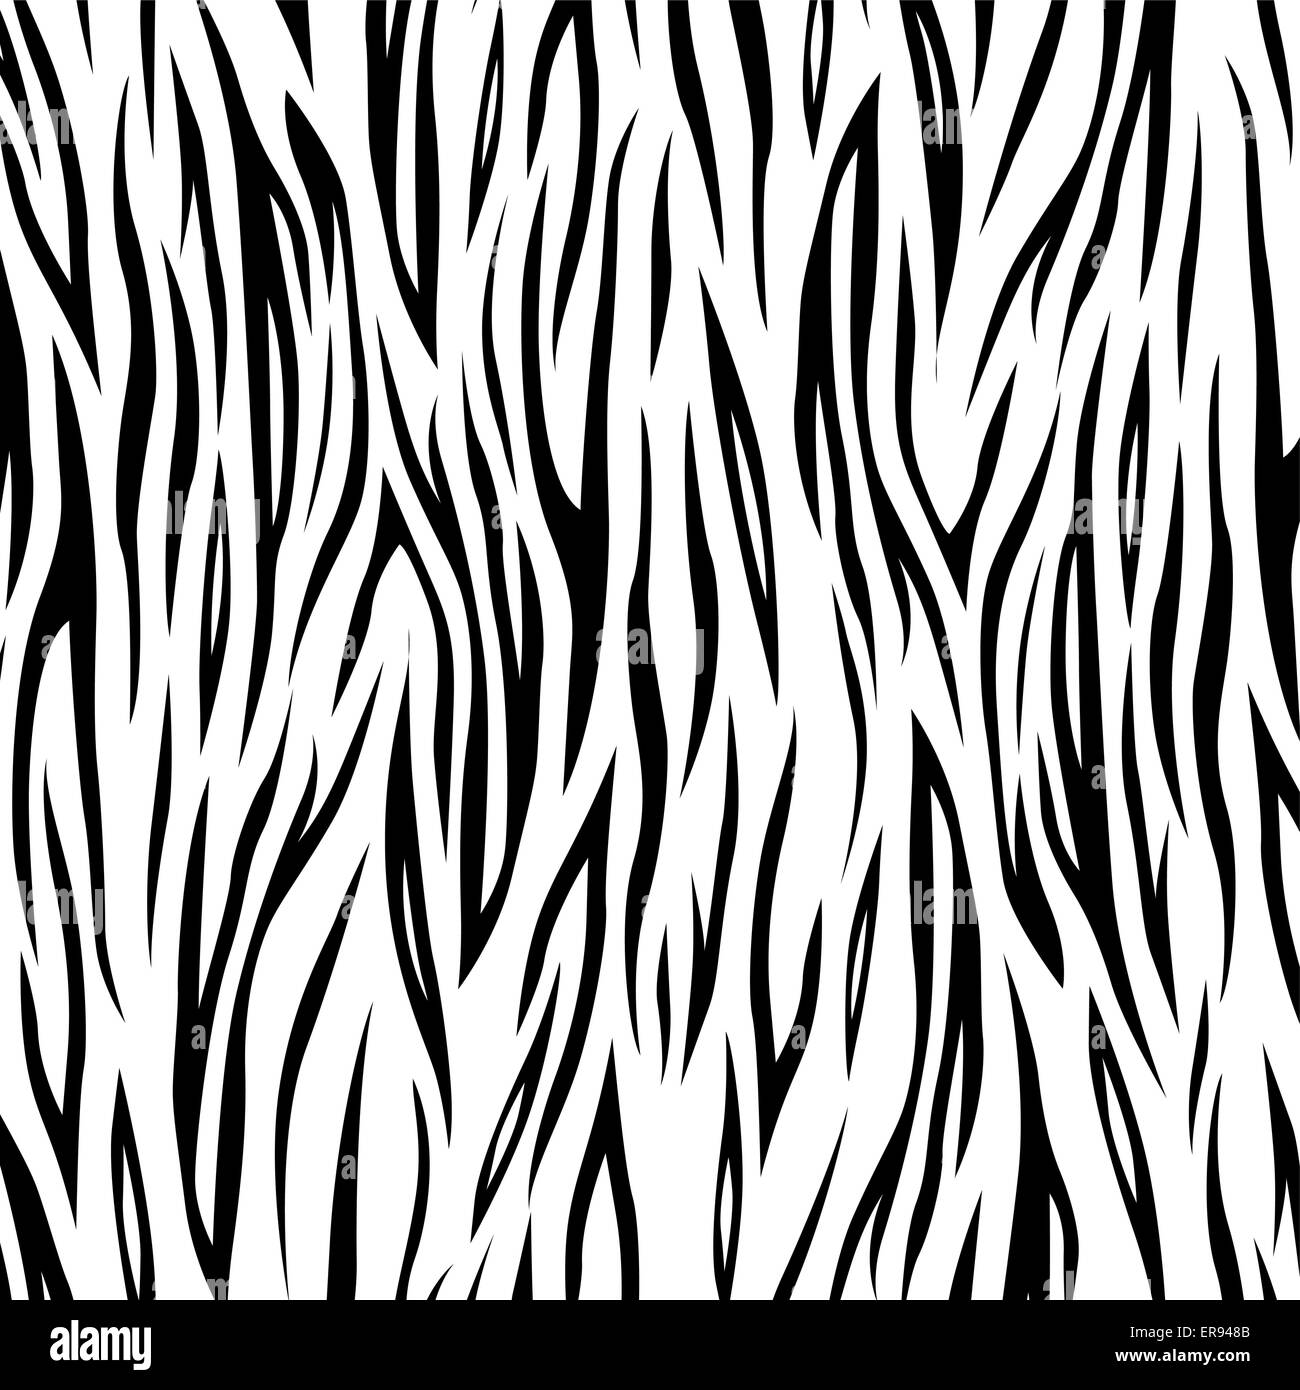 Ilustración vectorial de fondo de cebra en blanco y negro Ilustración del Vector